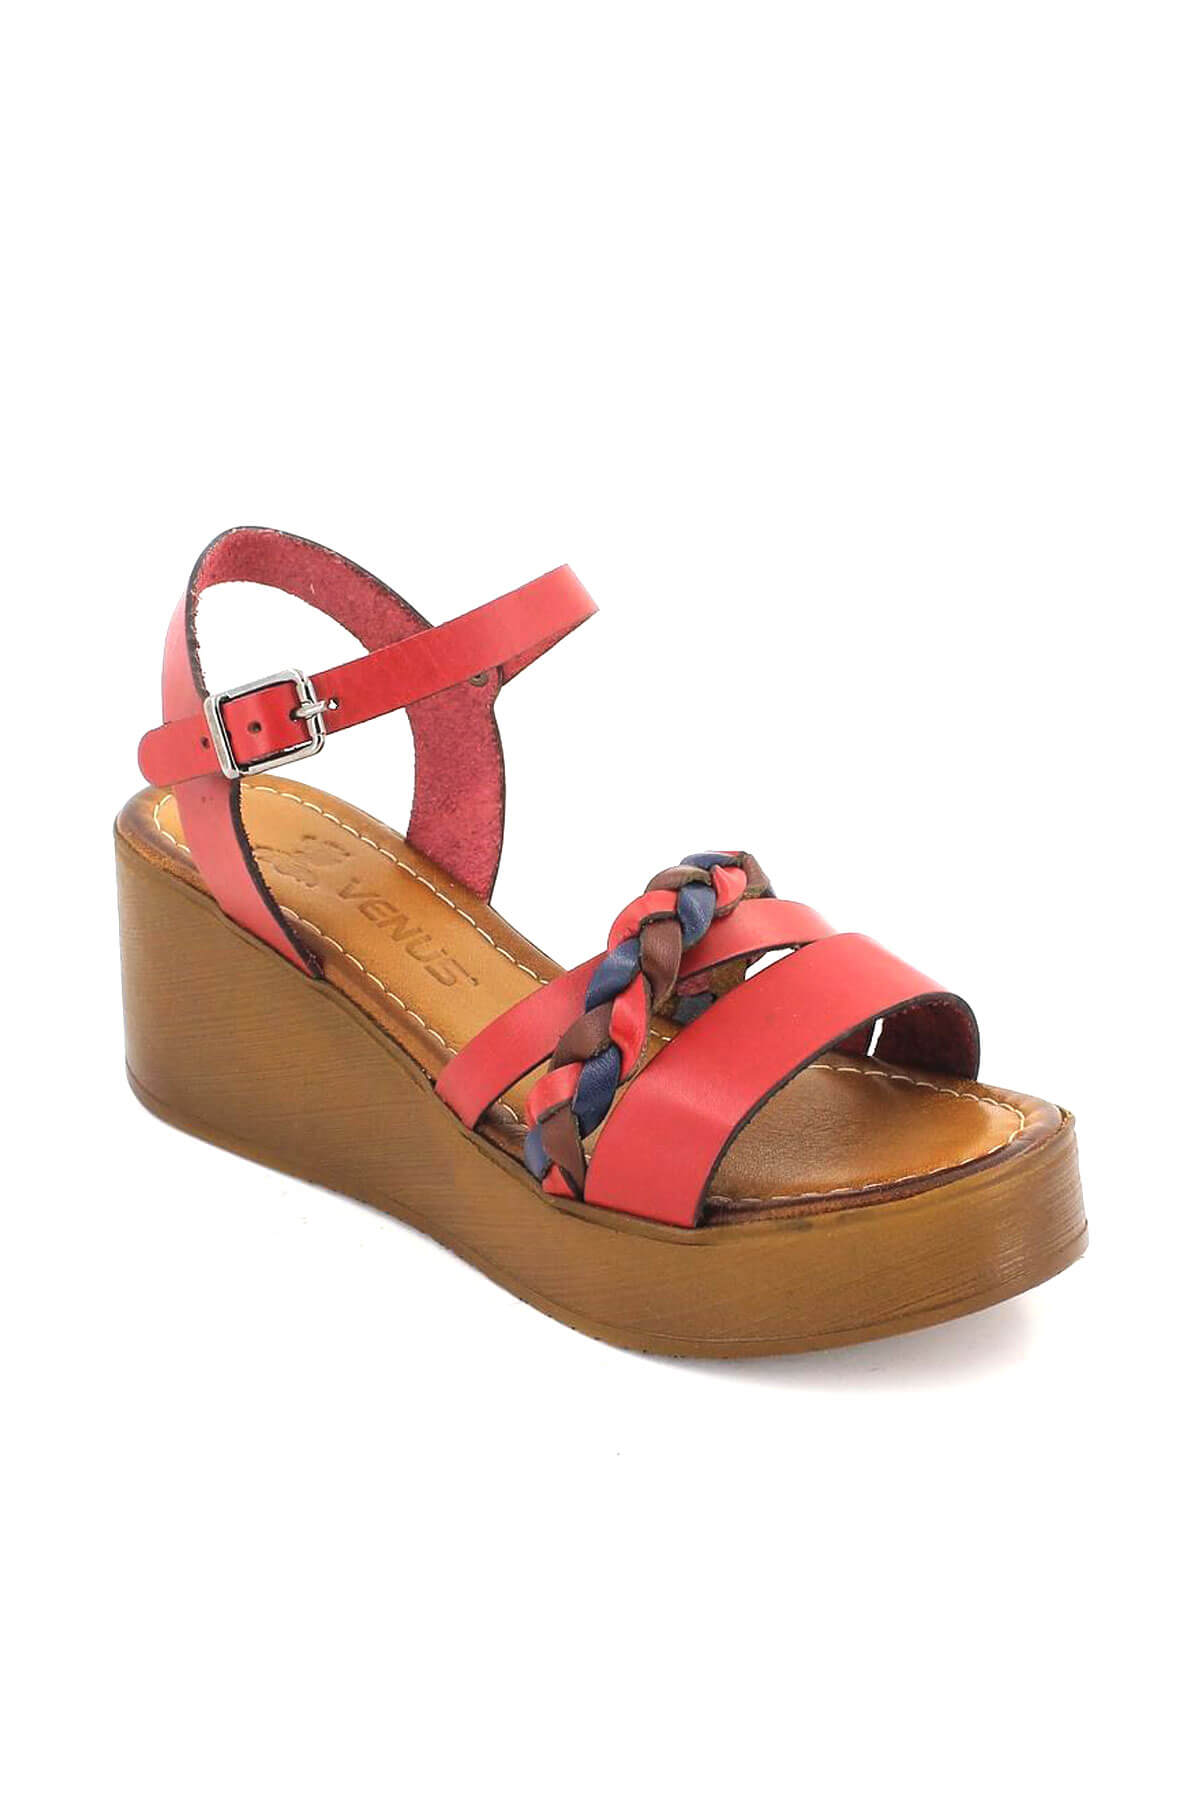 Kadın Deri Dolgu Topuk Sandalet Kırmızı 21983400 - Thumbnail